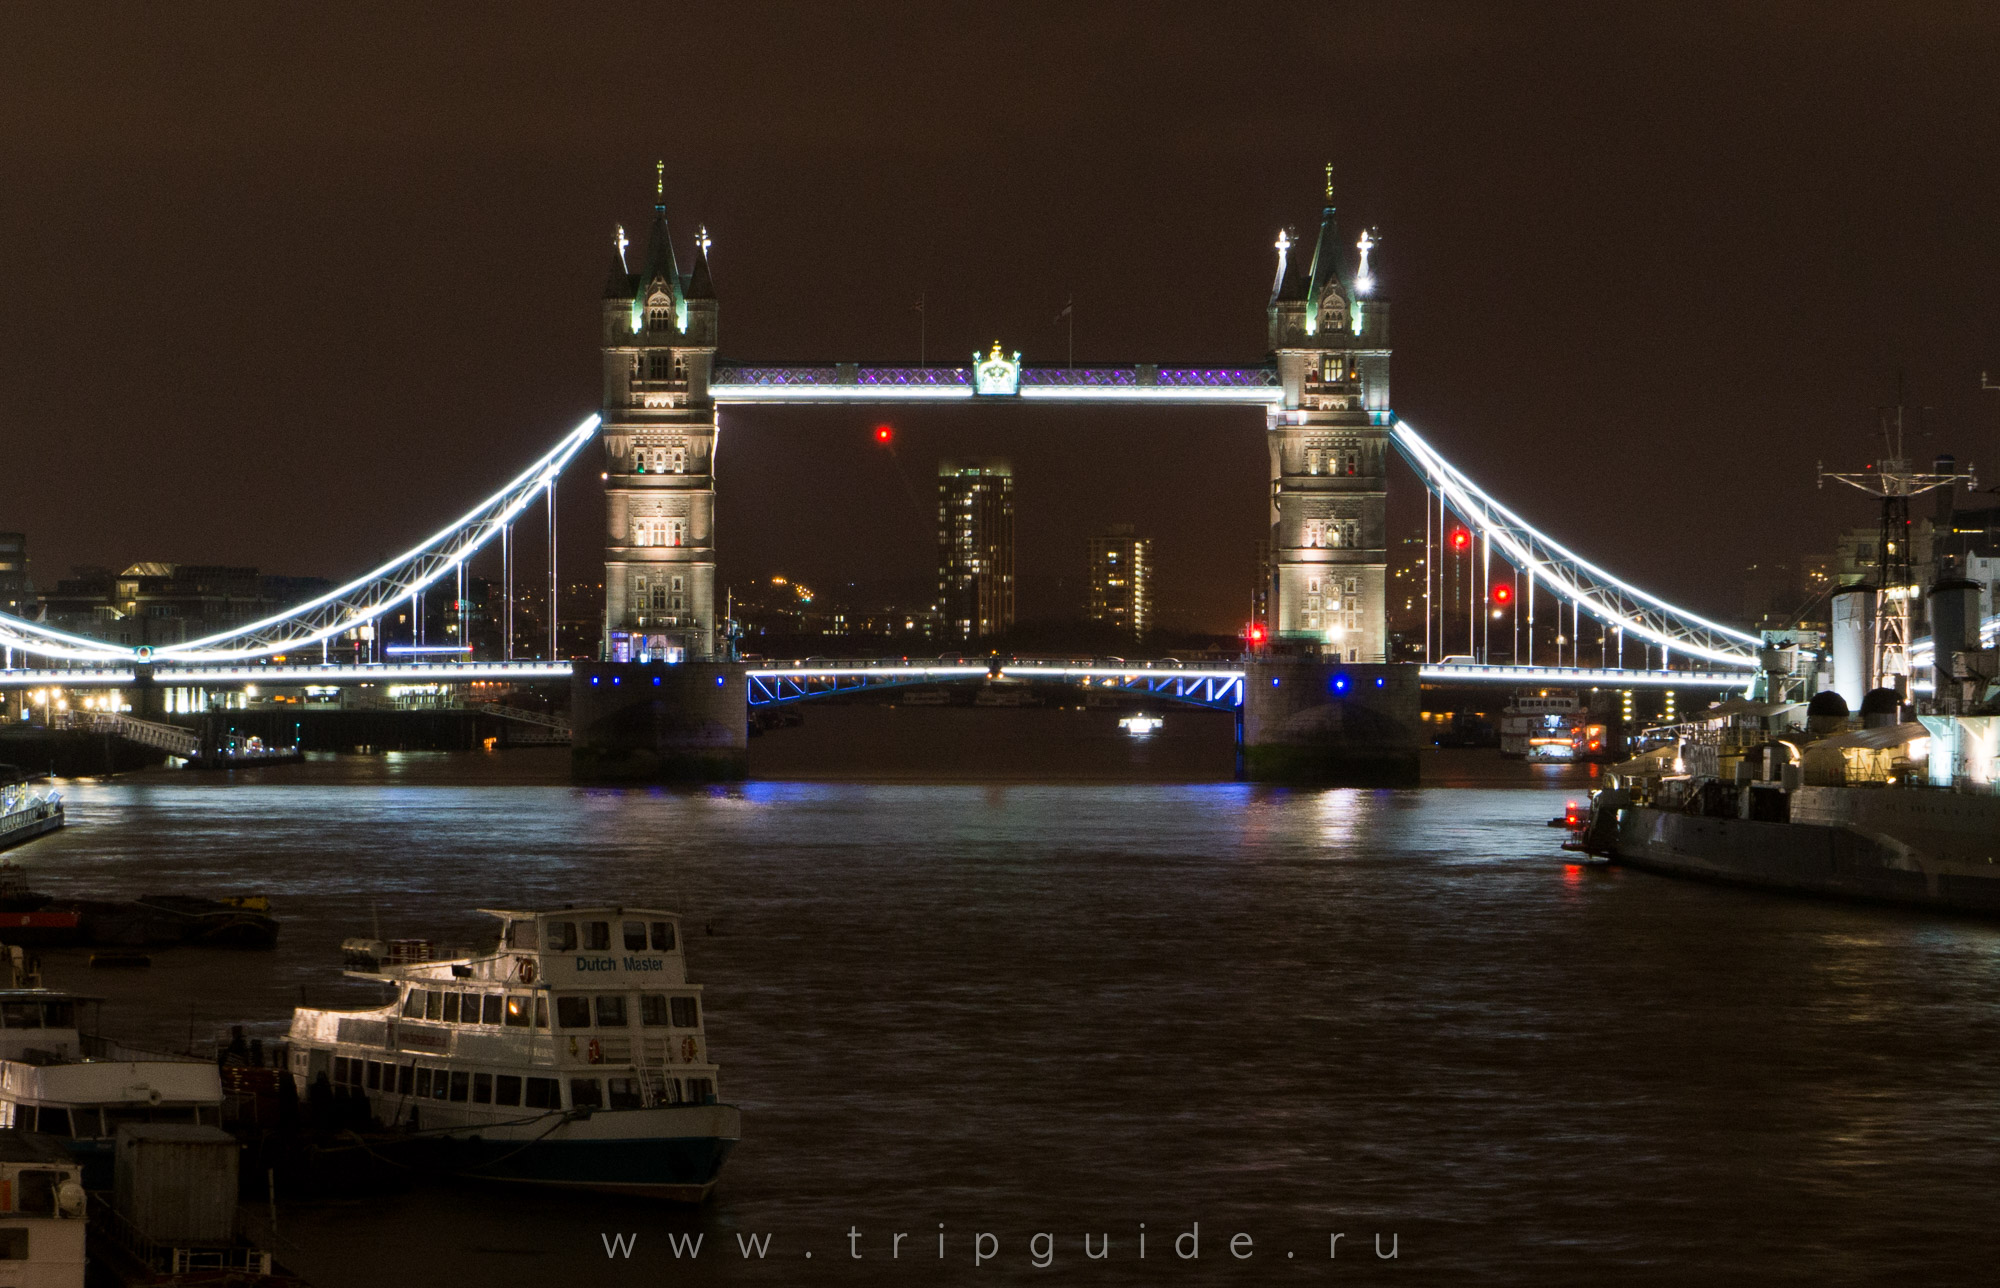 Местоположение моста. Тауэрский мост мост ночью. Тауэрский мост Арзамас. Мост в Санкт-Петербурге который похож на Тауэрский мост. Лондонский мост СПБ.